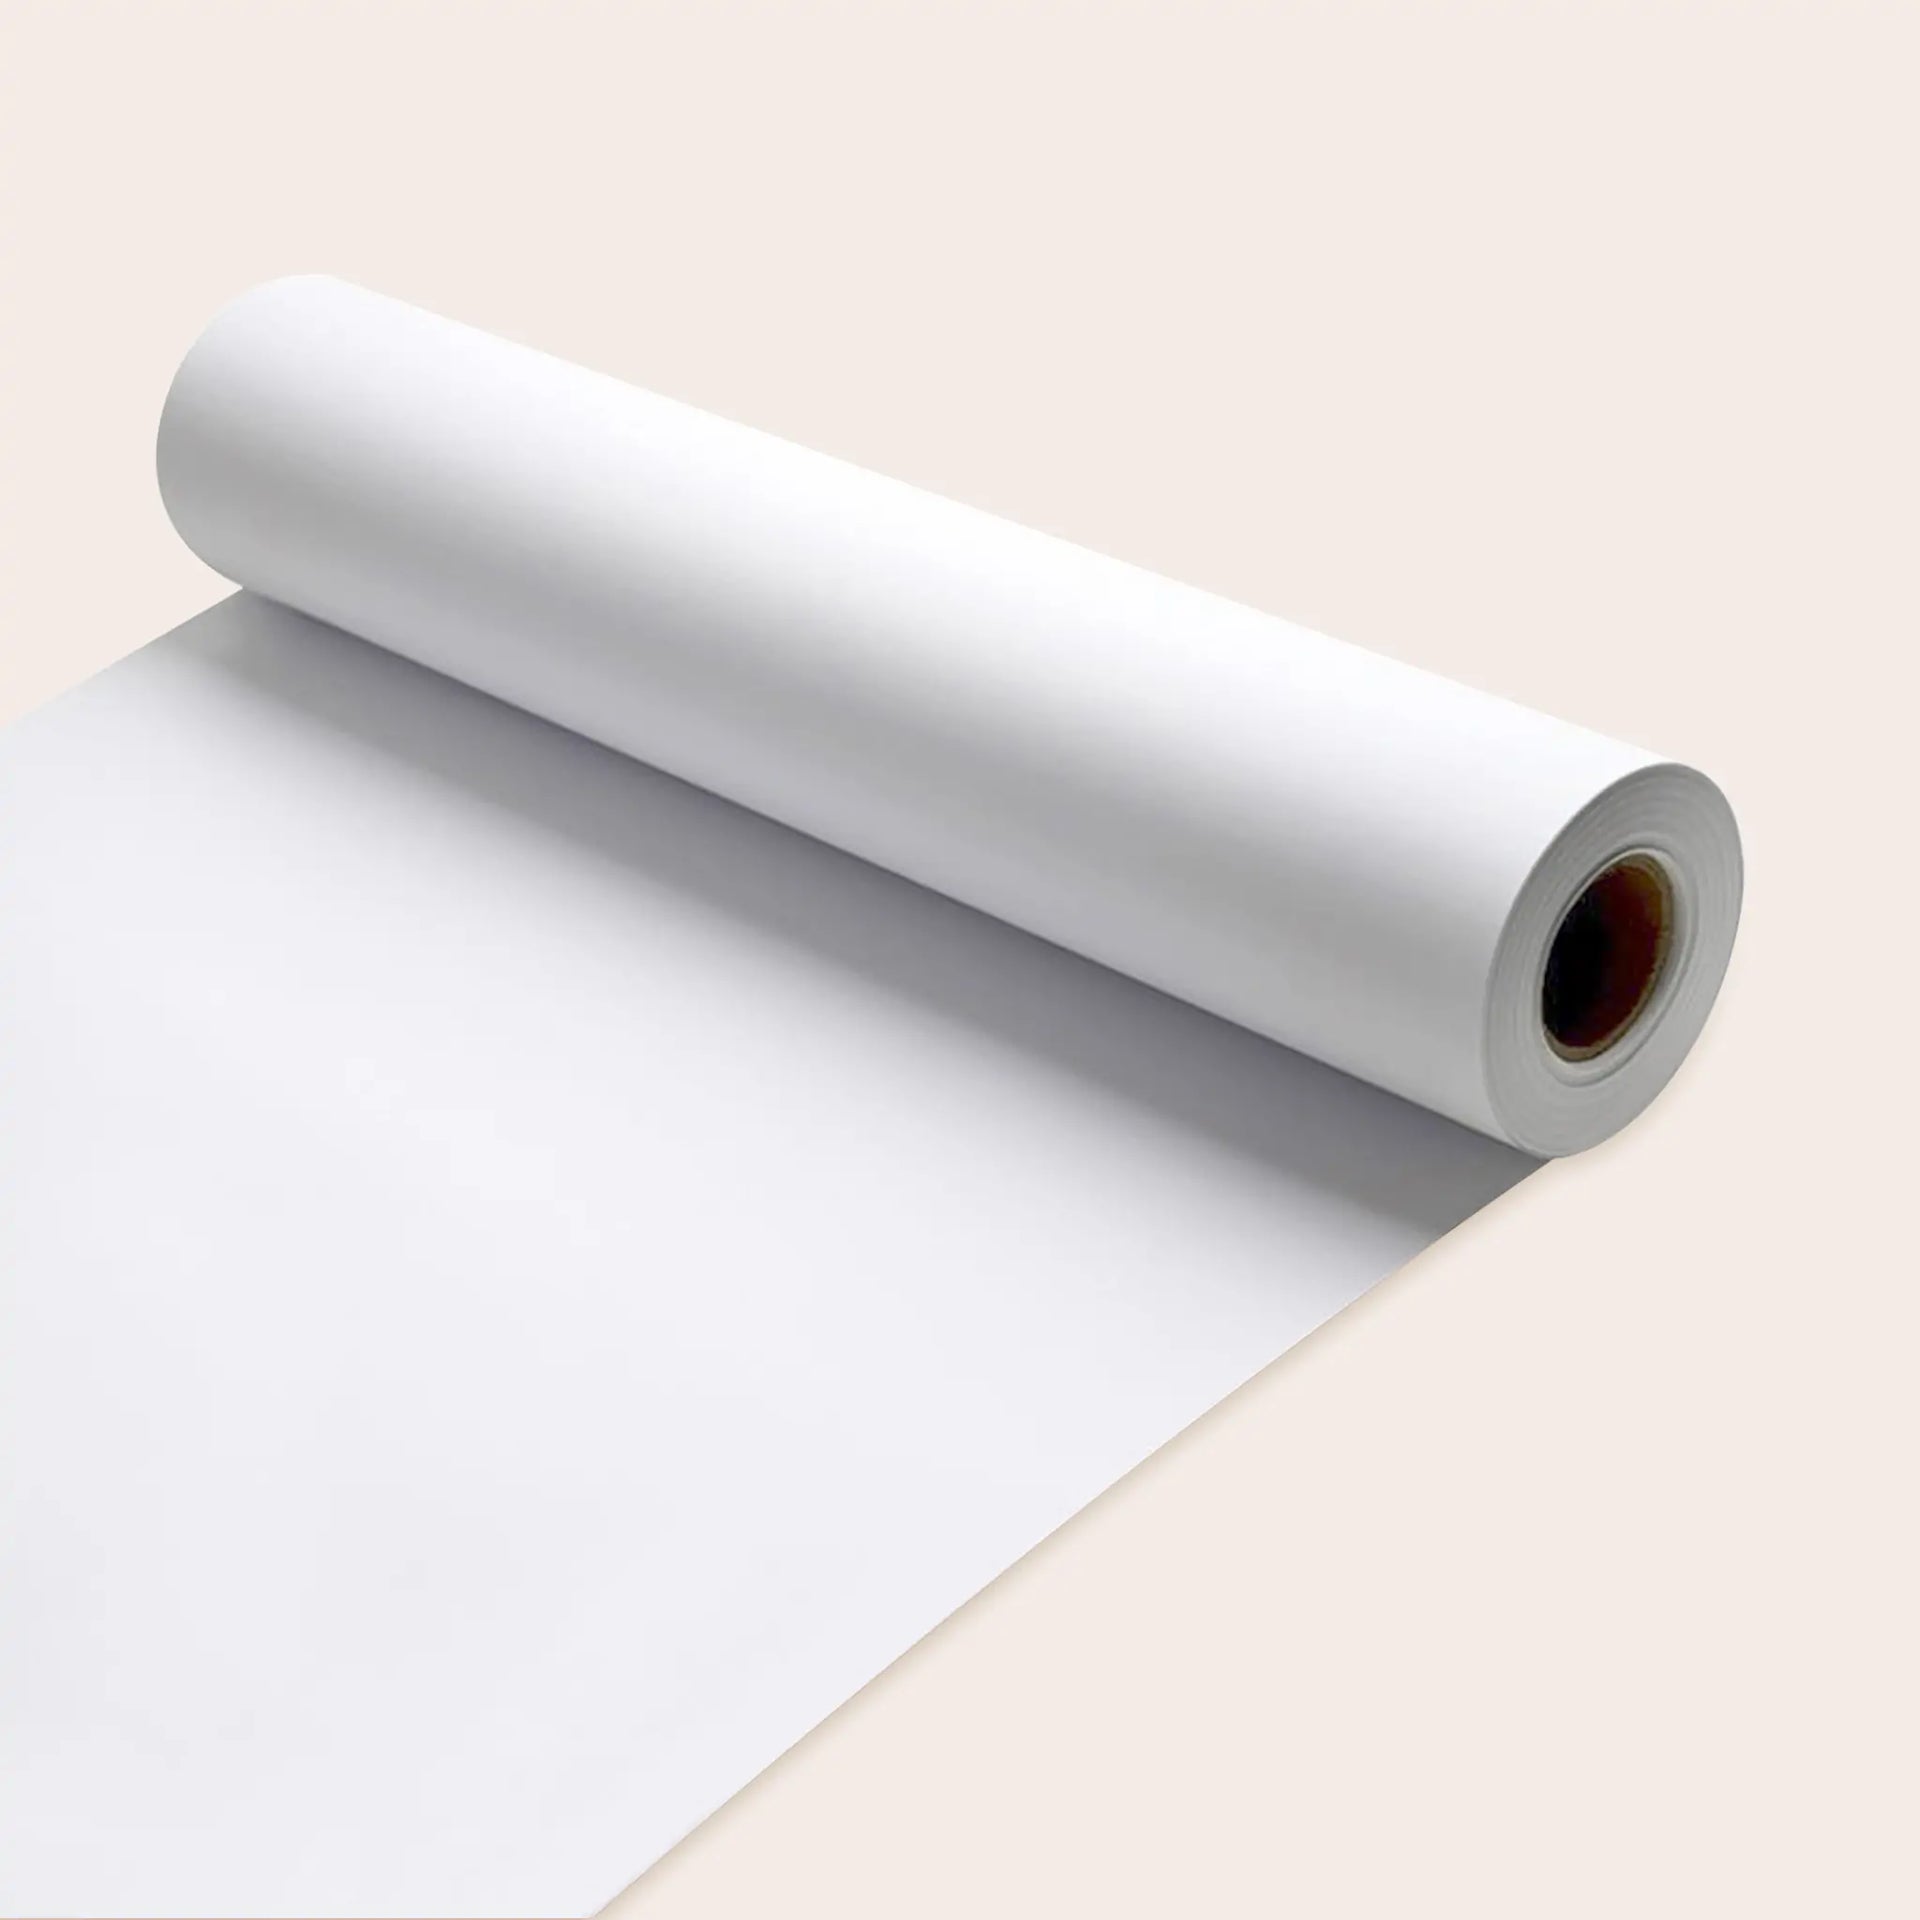 Buy Prang® Art & Easel Paper Roll at S&S Worldwide